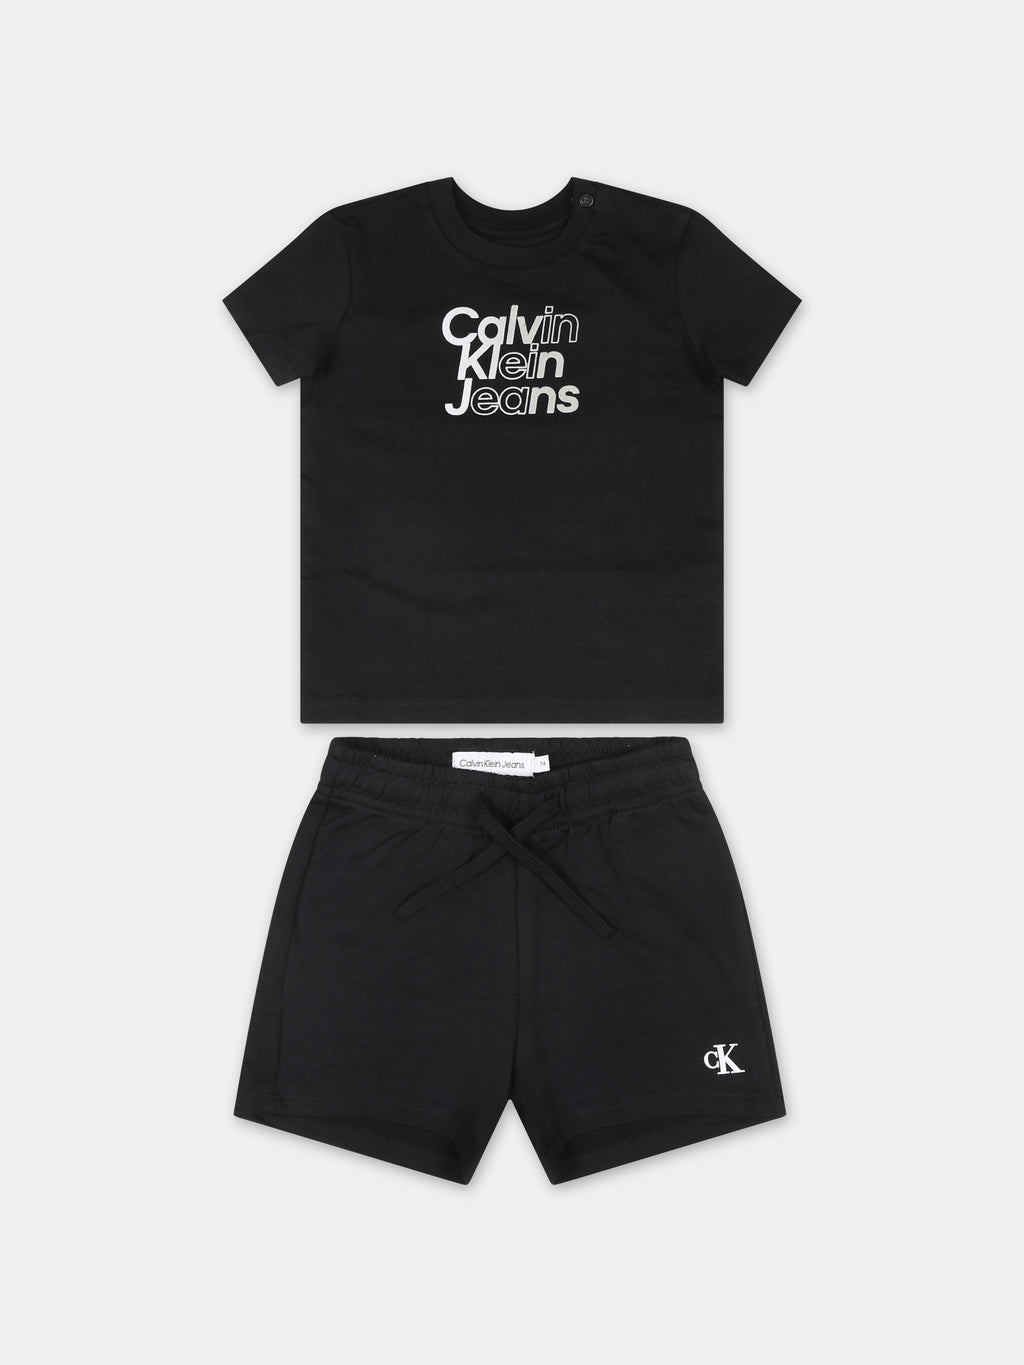 Completo nero per neonato con logo